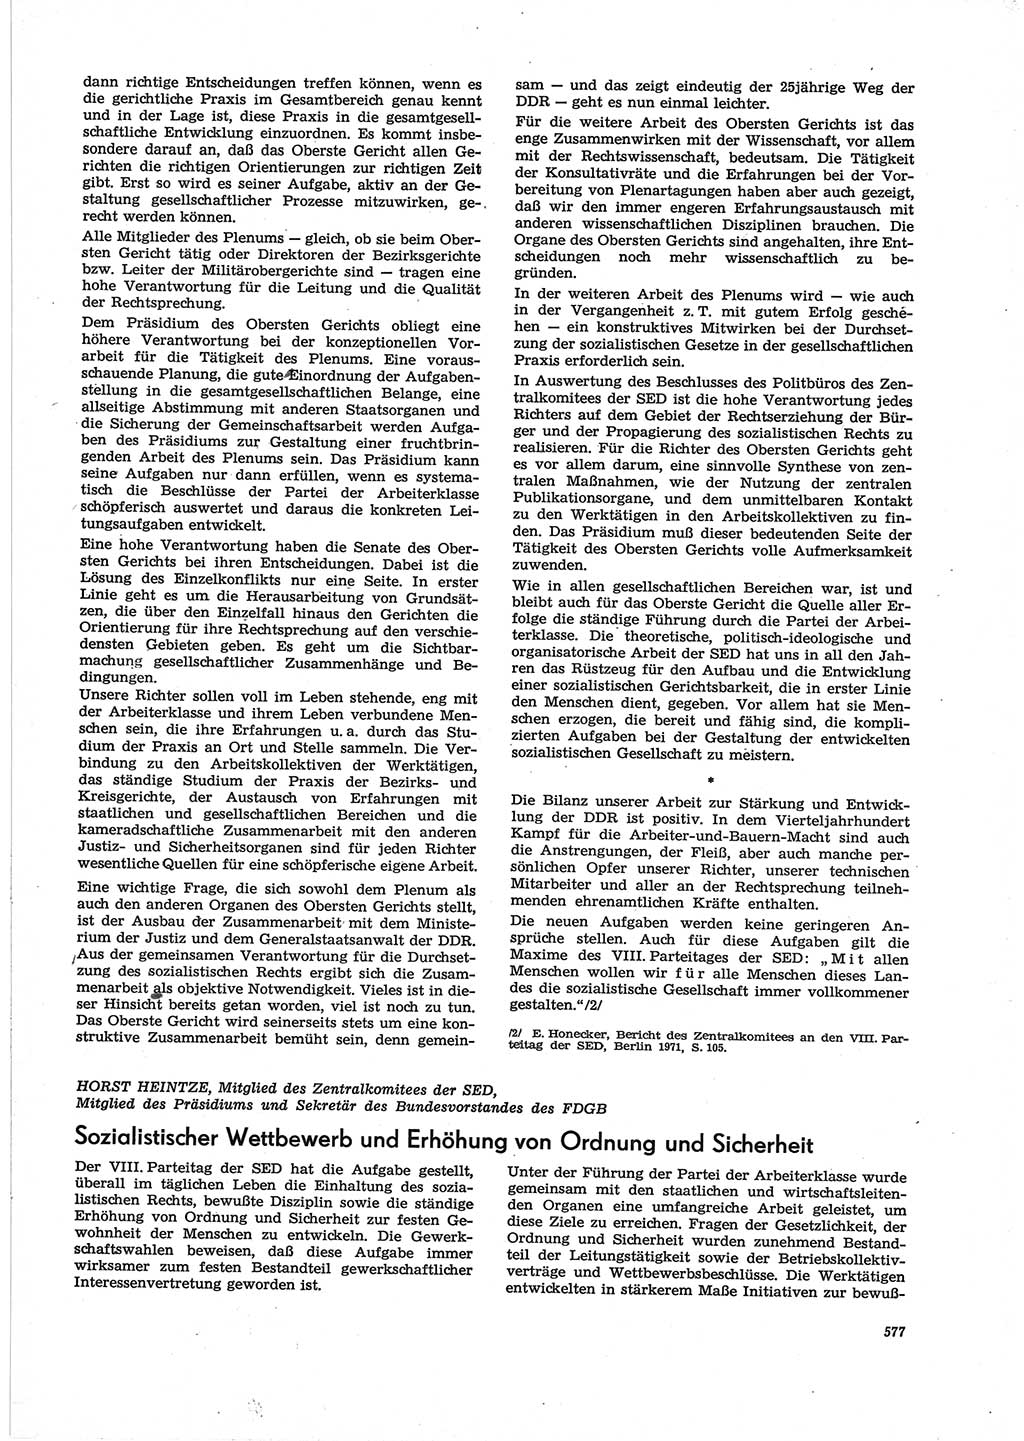 Neue Justiz (NJ), Zeitschrift für Recht und Rechtswissenschaft [Deutsche Demokratische Republik (DDR)], 28. Jahrgang 1974, Seite 577 (NJ DDR 1974, S. 577)